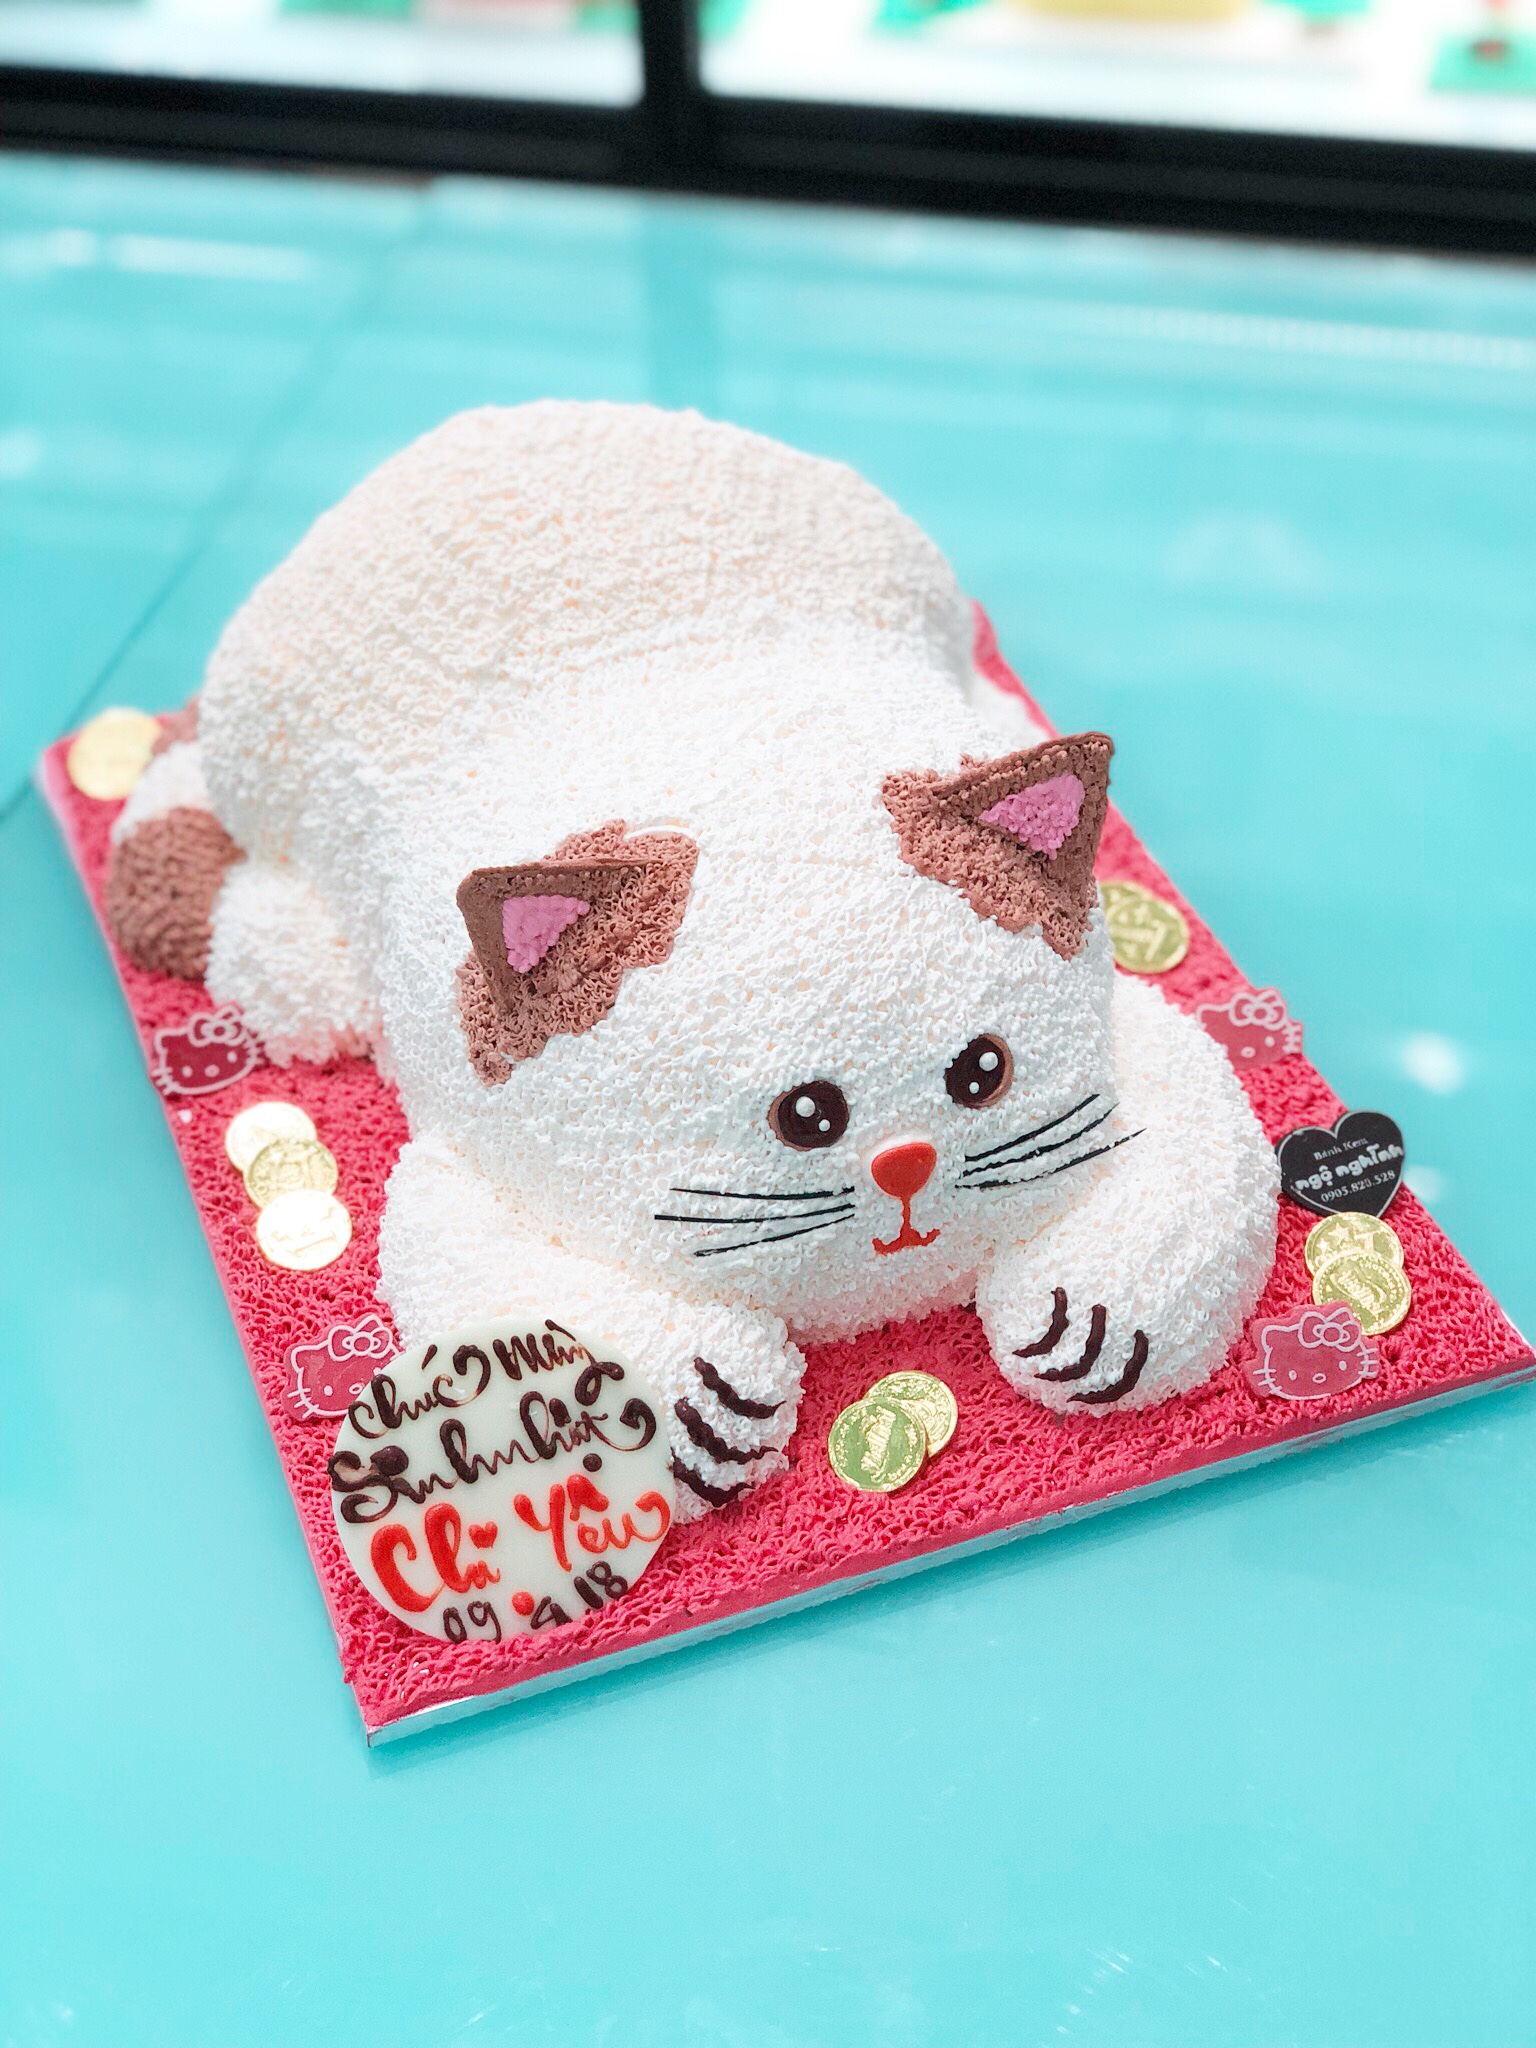 Bánh sinh nhật con mèo 3D: Để làm cho sinh nhật của bạn trở nên đặc biệt và khó quên hơn, hãy chọn một chiếc bánh con mèo 3D. Hương vị tuyệt vời kết hợp với thiết kế độc đáo của chiếc bánh sẽ khiến khách mời của bạn bất ngờ và đam mê. Những khoảnh khắc đáng nhớ được ghi lại bởi bức ảnh thật đáng yêu này chắc chắn sẽ trở thành kỷ niệm vĩnh viễn của bạn.